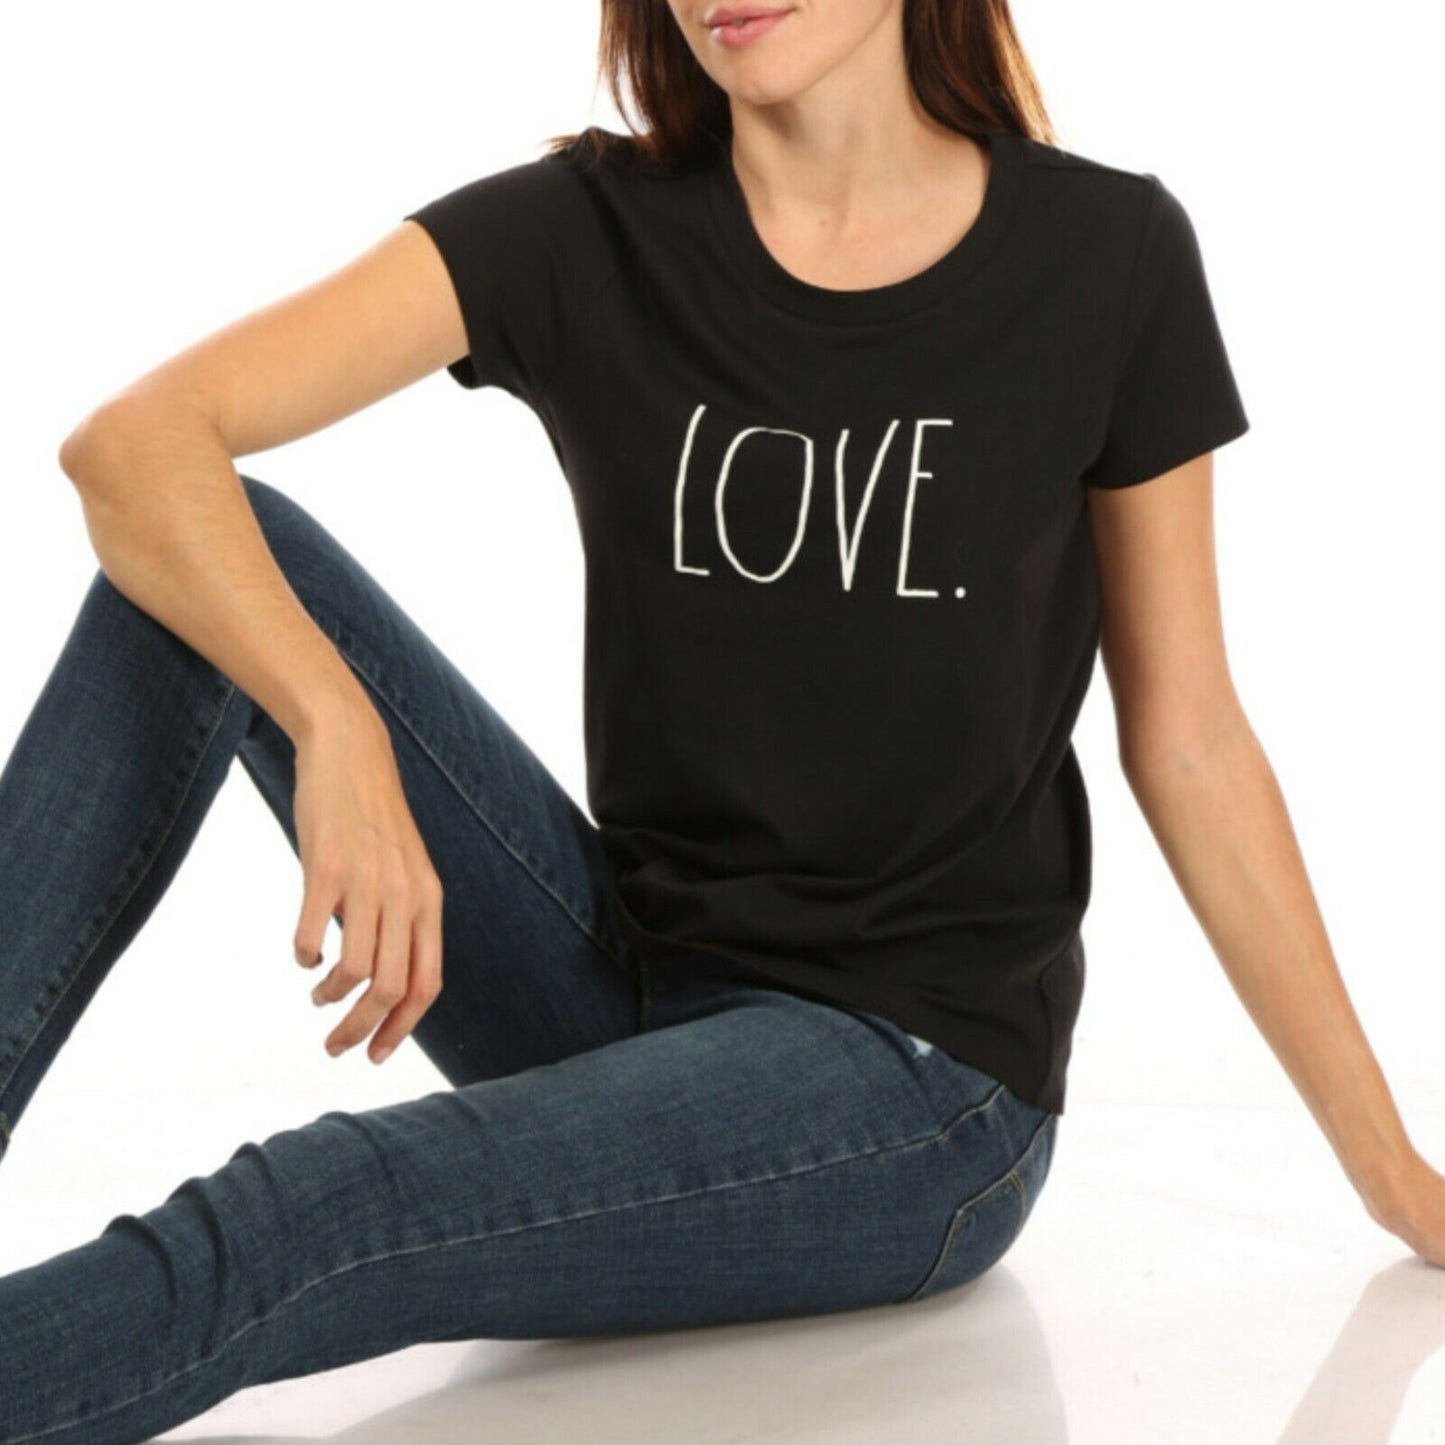 Rae Dunn Women's Love Print Cotton Short Sleeve T-shirt